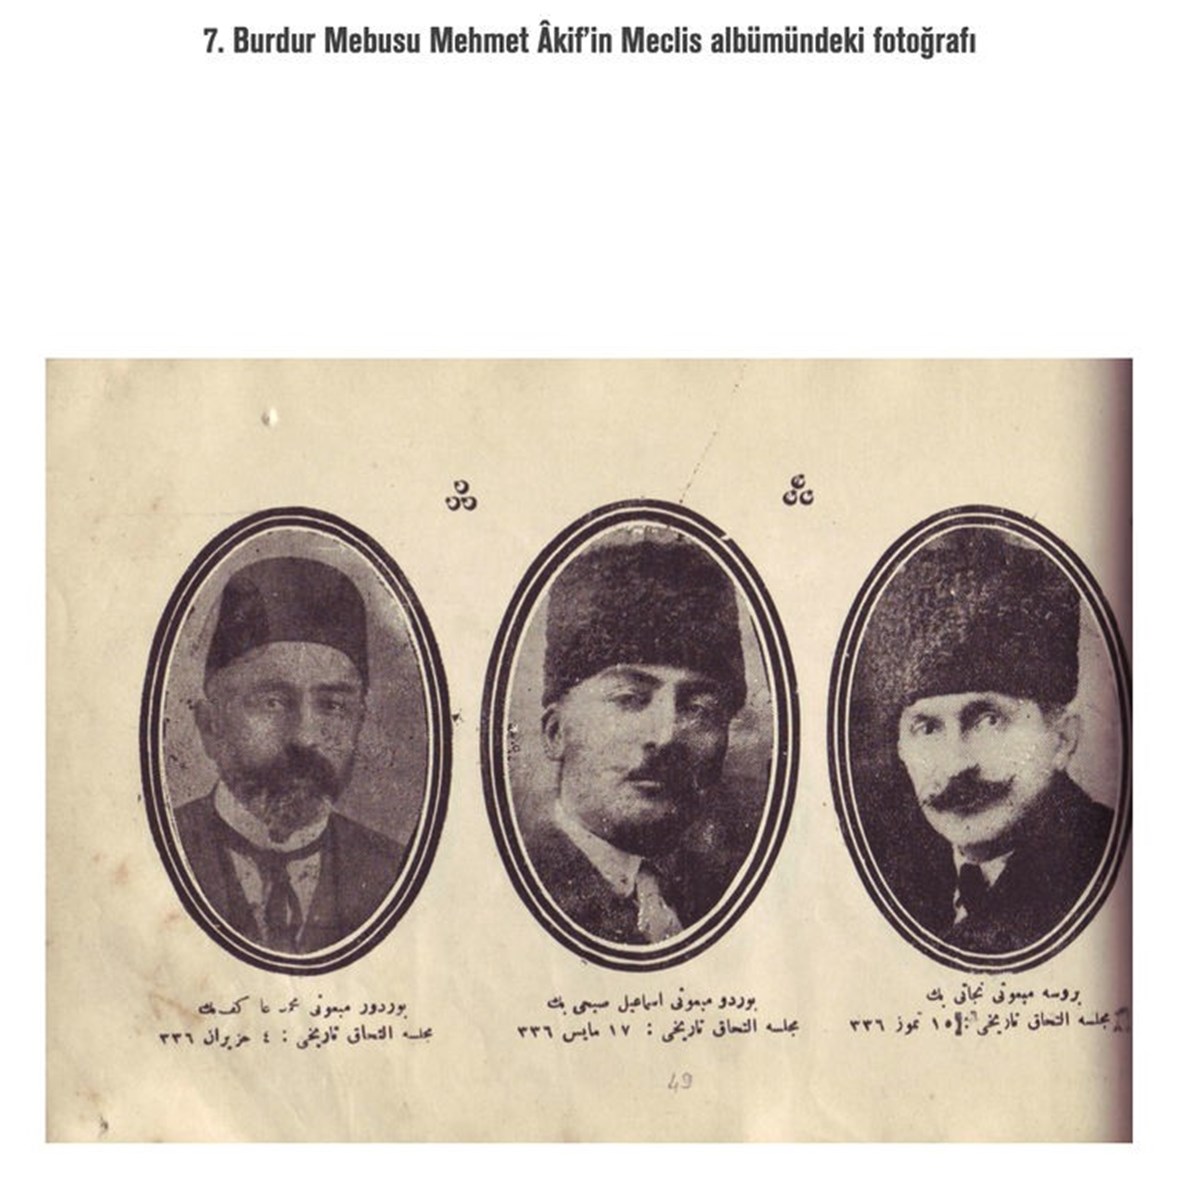 İstiklal Marşı 103 yaşında: İstiklal Marşı ne zaman kabul edildi?